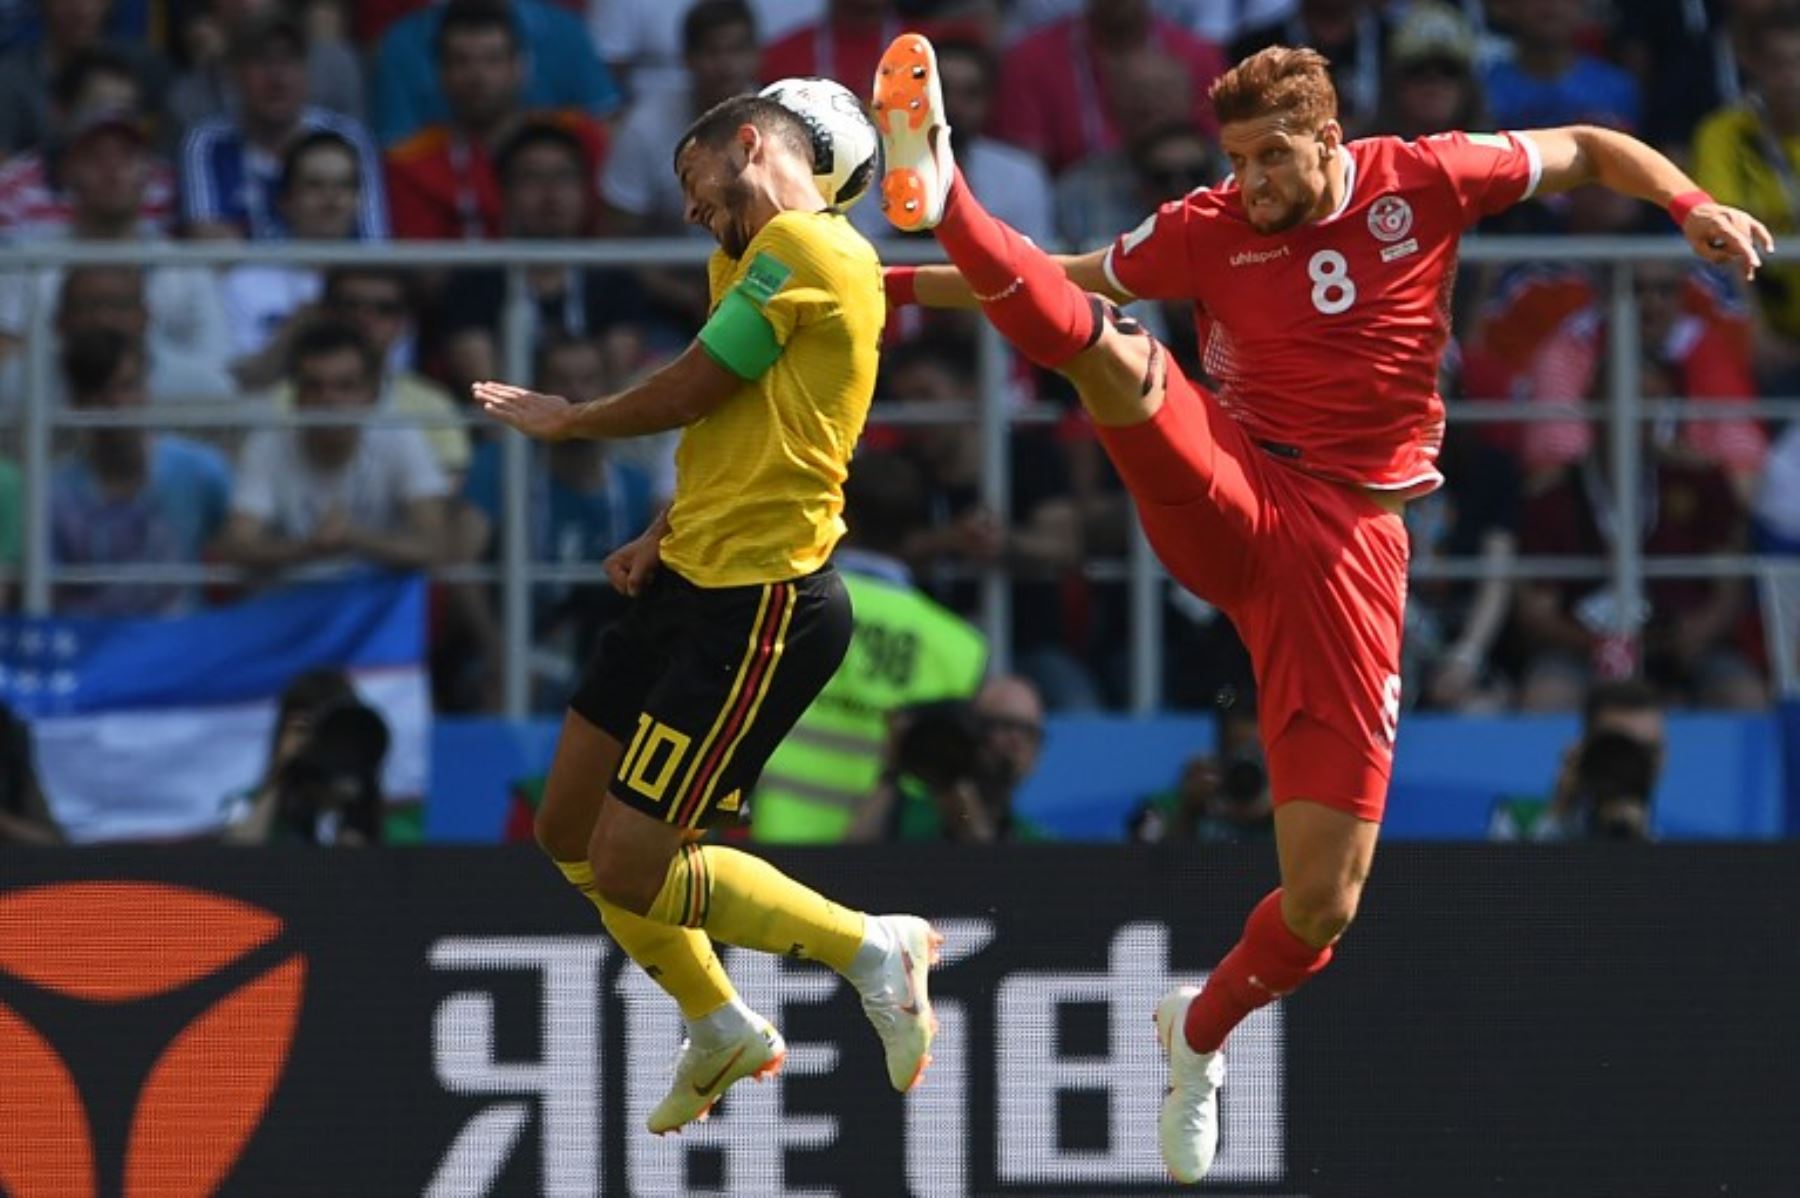 El delantero belga Eden Hazard compite por el balón con Fakhreddine Ben Youssef de Túnez durante el partido de fútbol del Grupo G de la Copa Mundial Rusia 2018 entre Bélgica y Túnez Foto:AFP